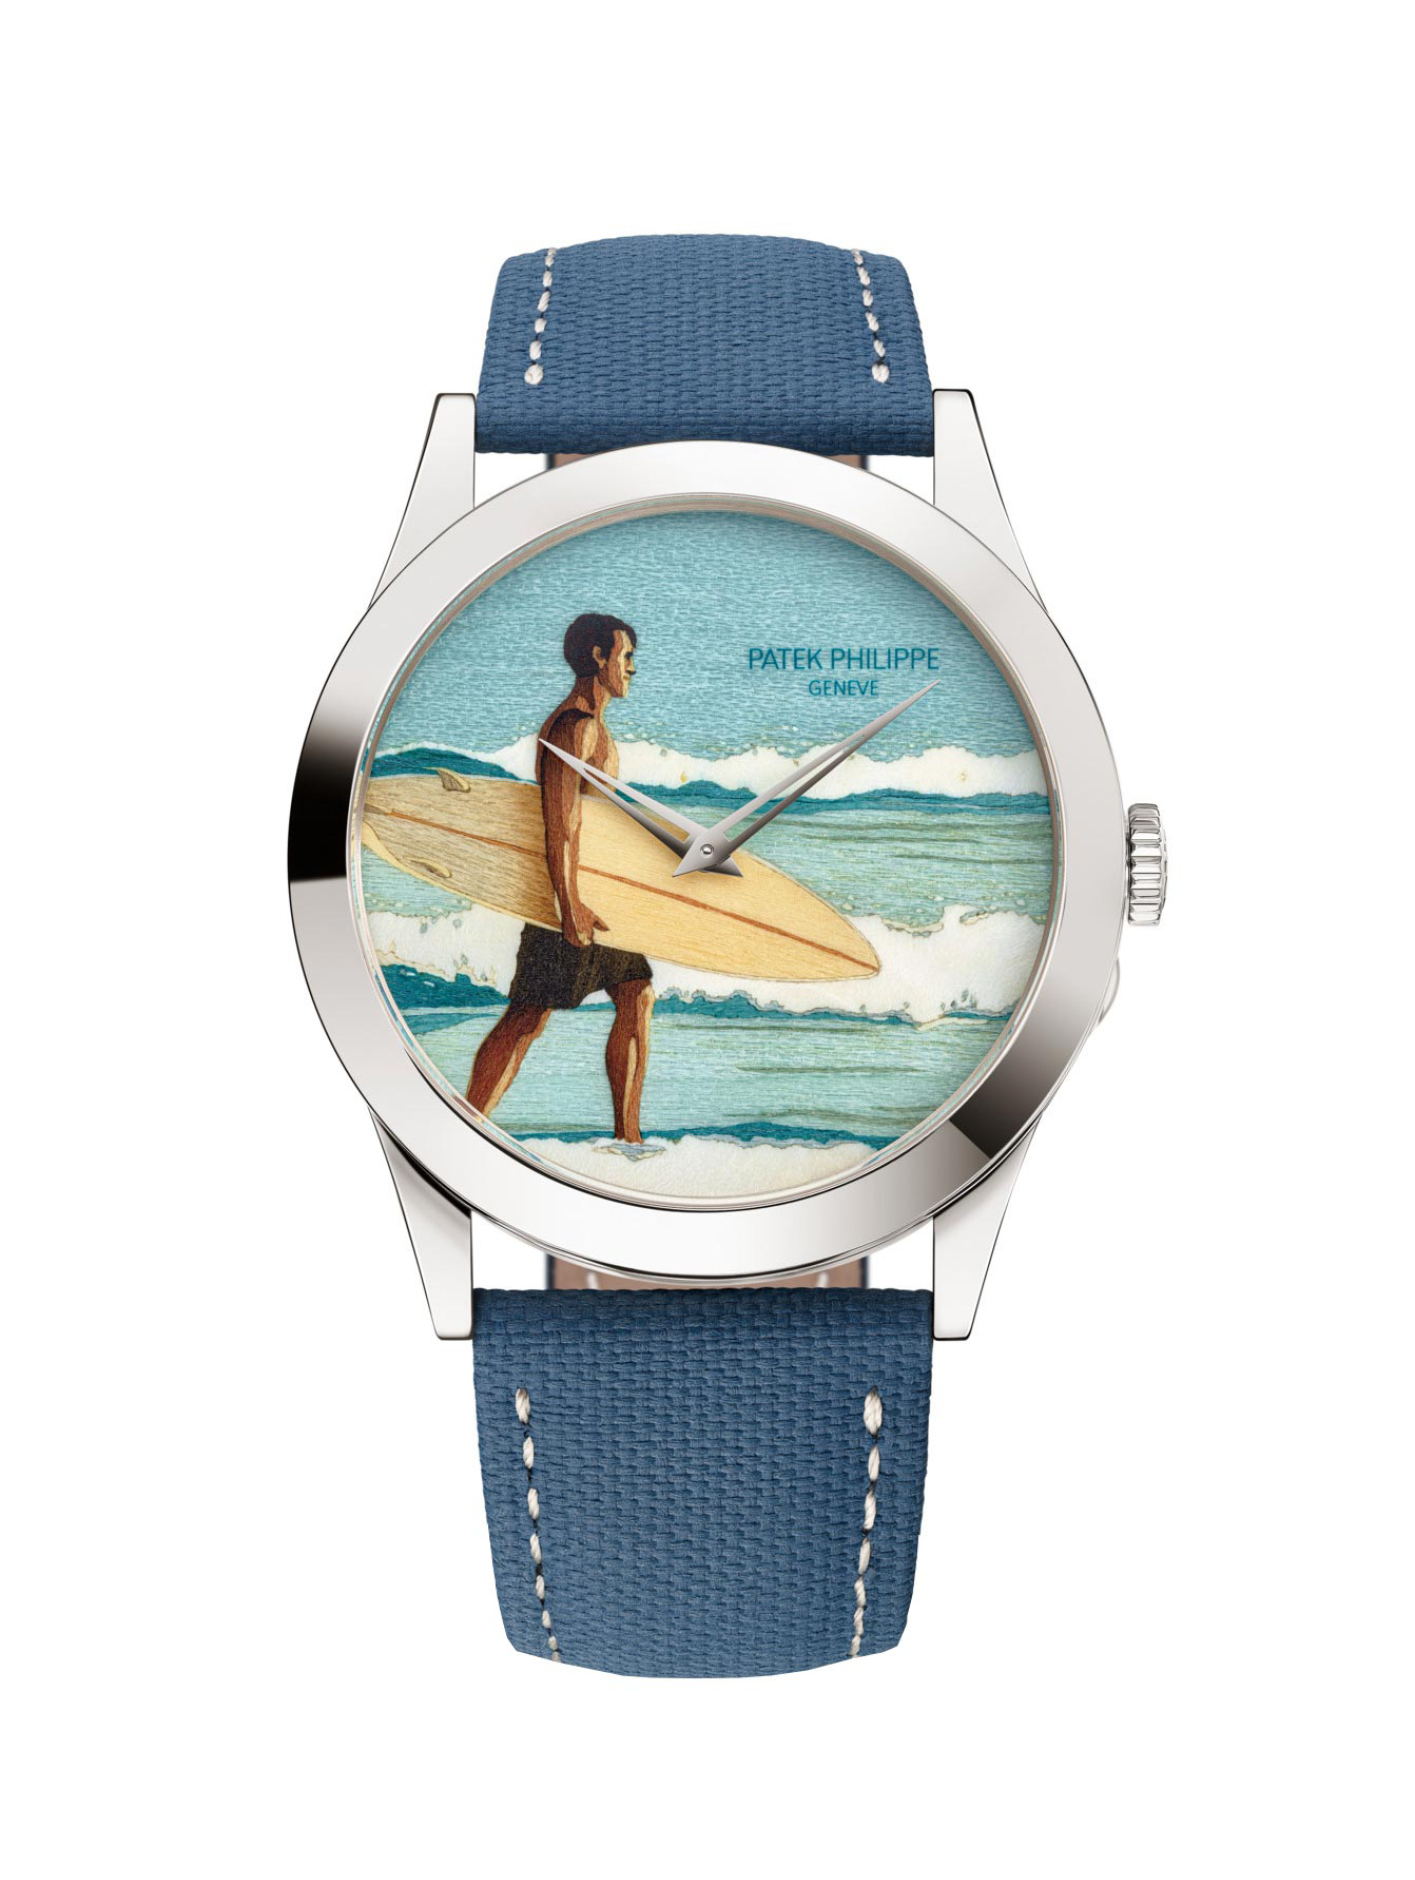 The Calatrava wristwatch “Morning on the Beach”